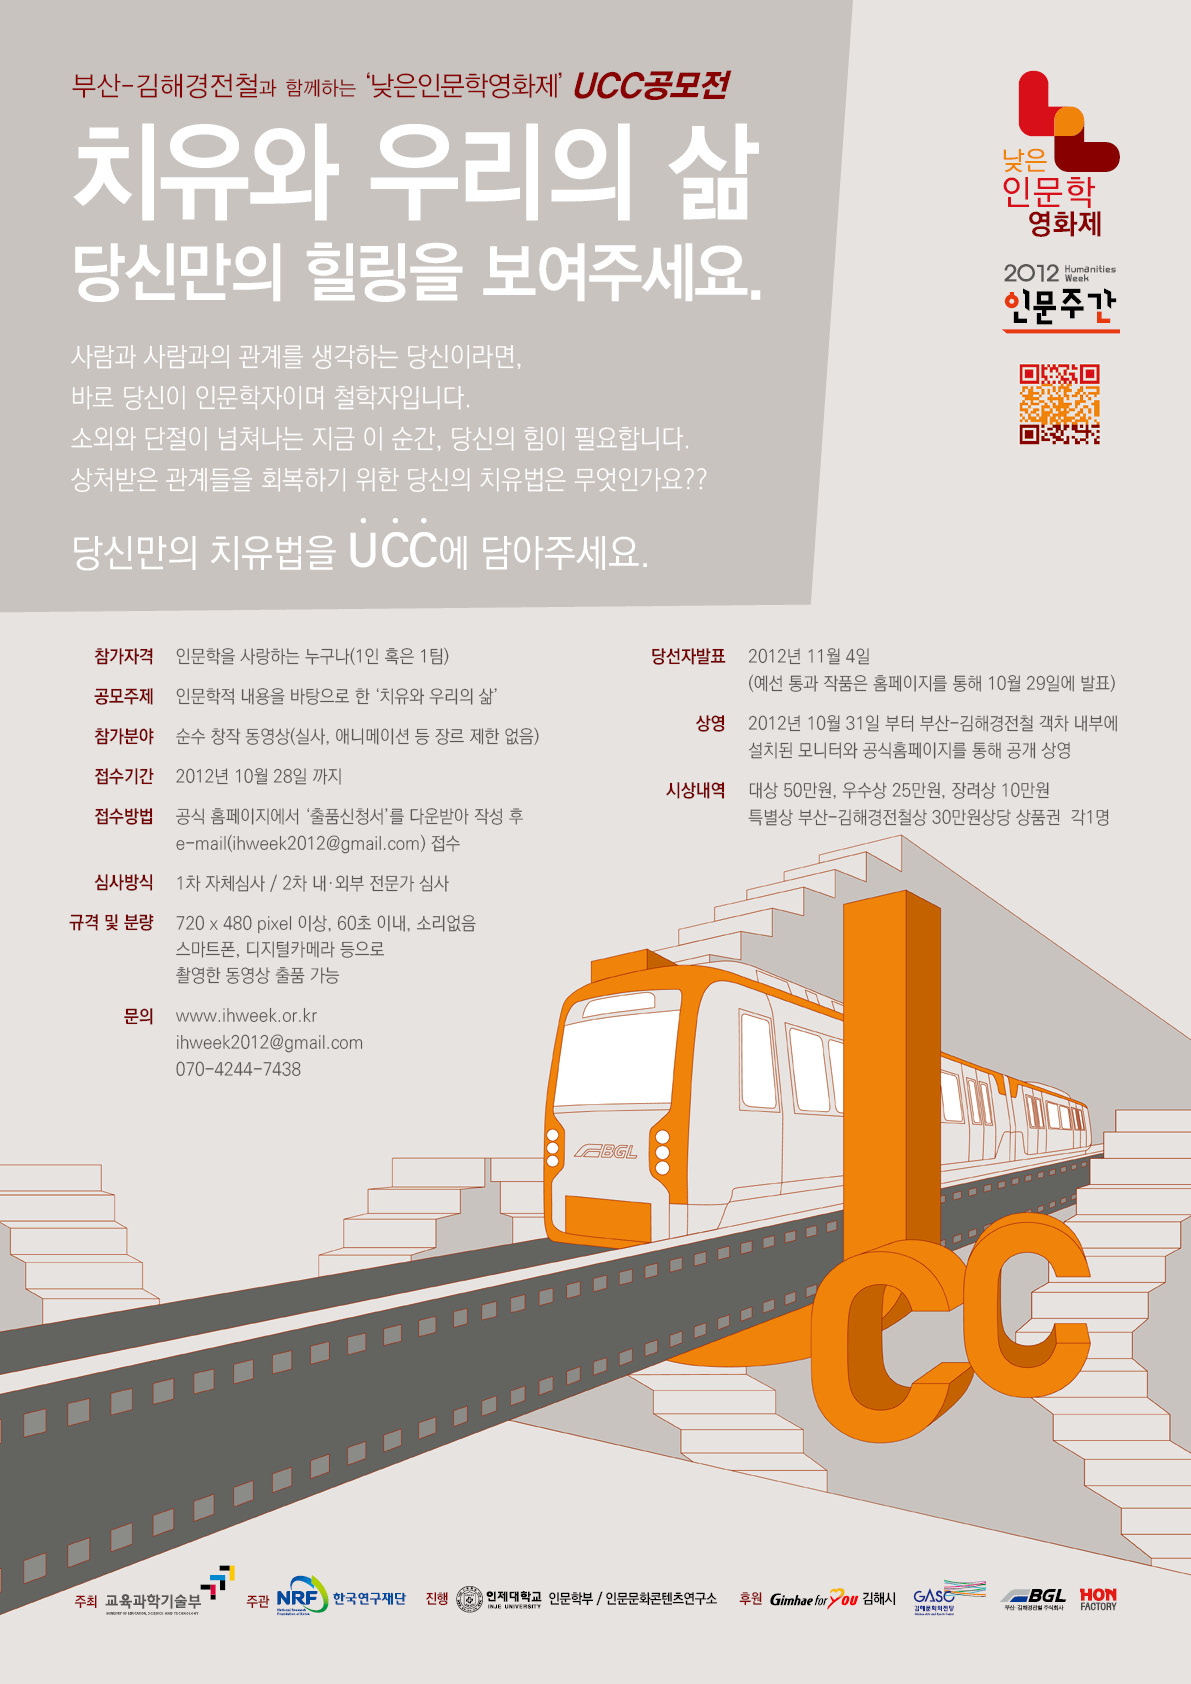 ‘부산-김해경전철’과 함께하는 ‘낮은인문학영화제 UCC 공모전’